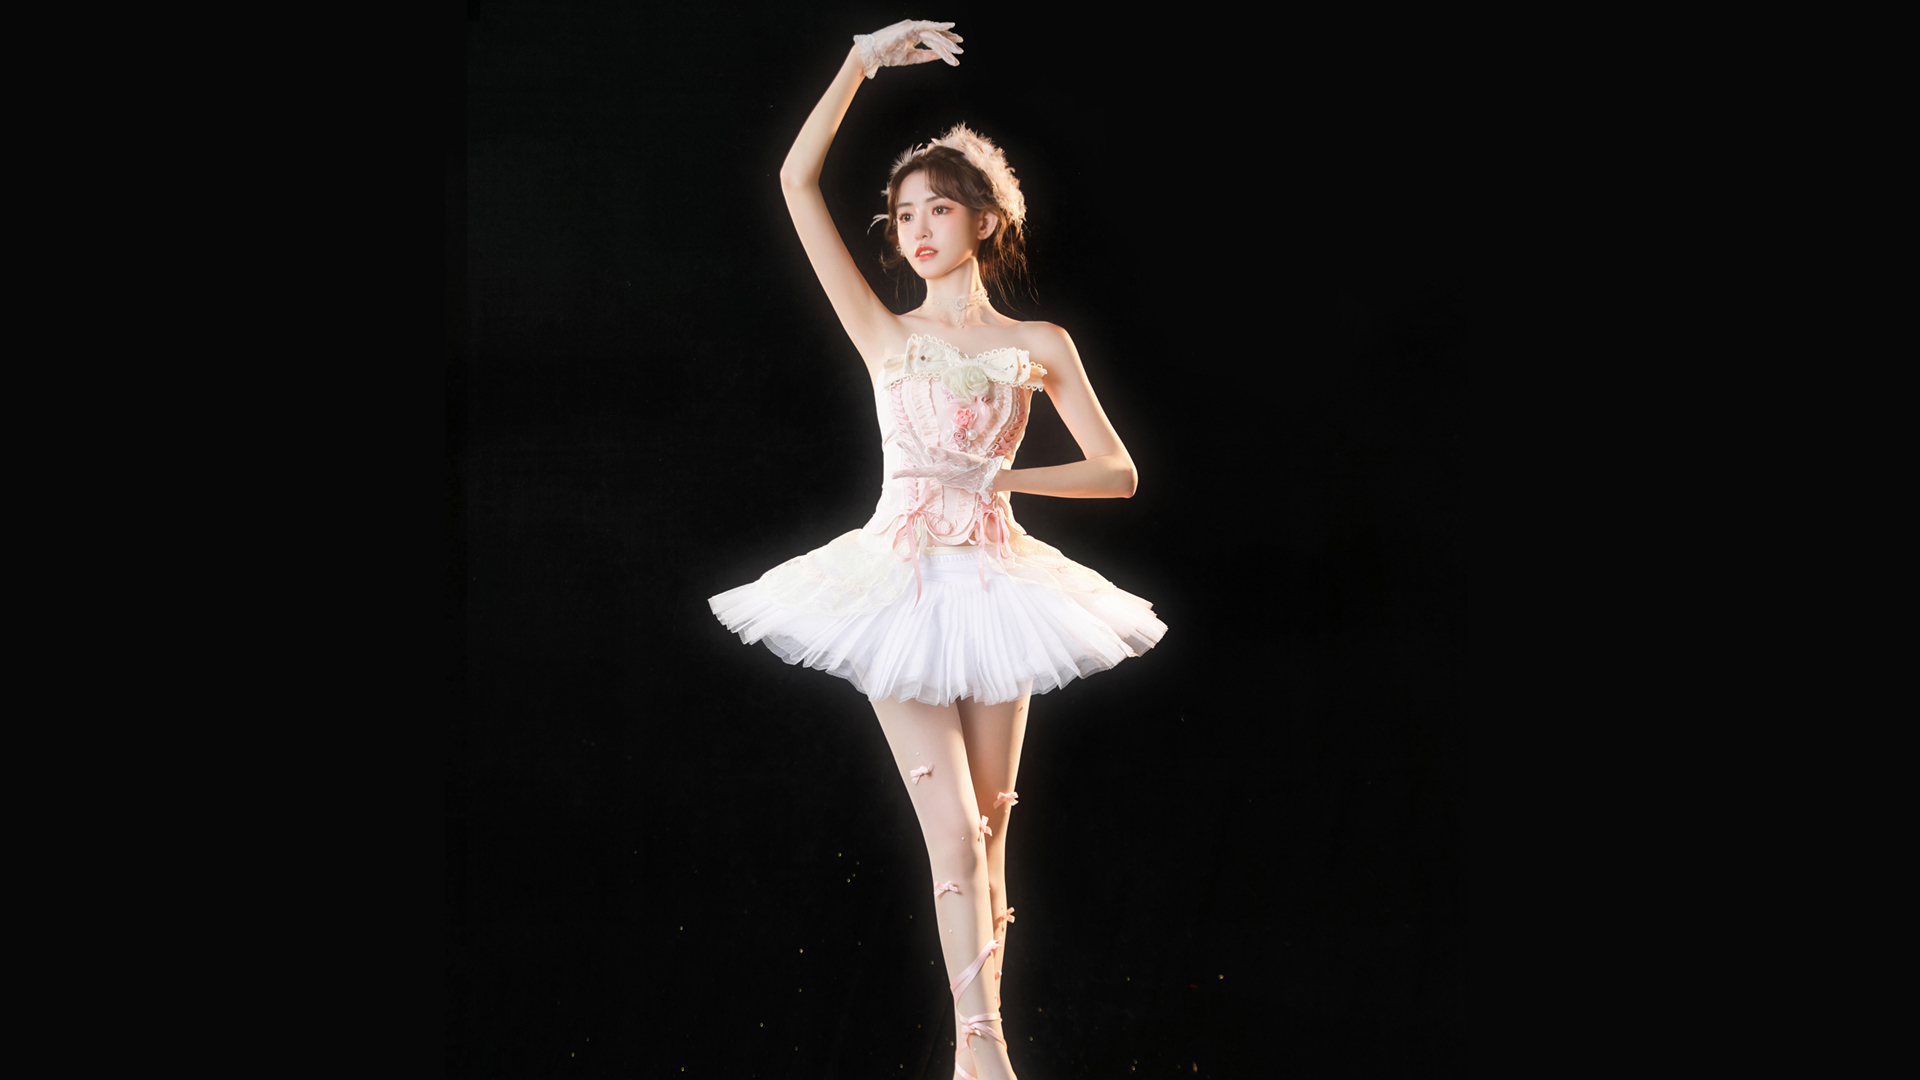 芭蕾舞美女壁纸高清大图预览1920x1080